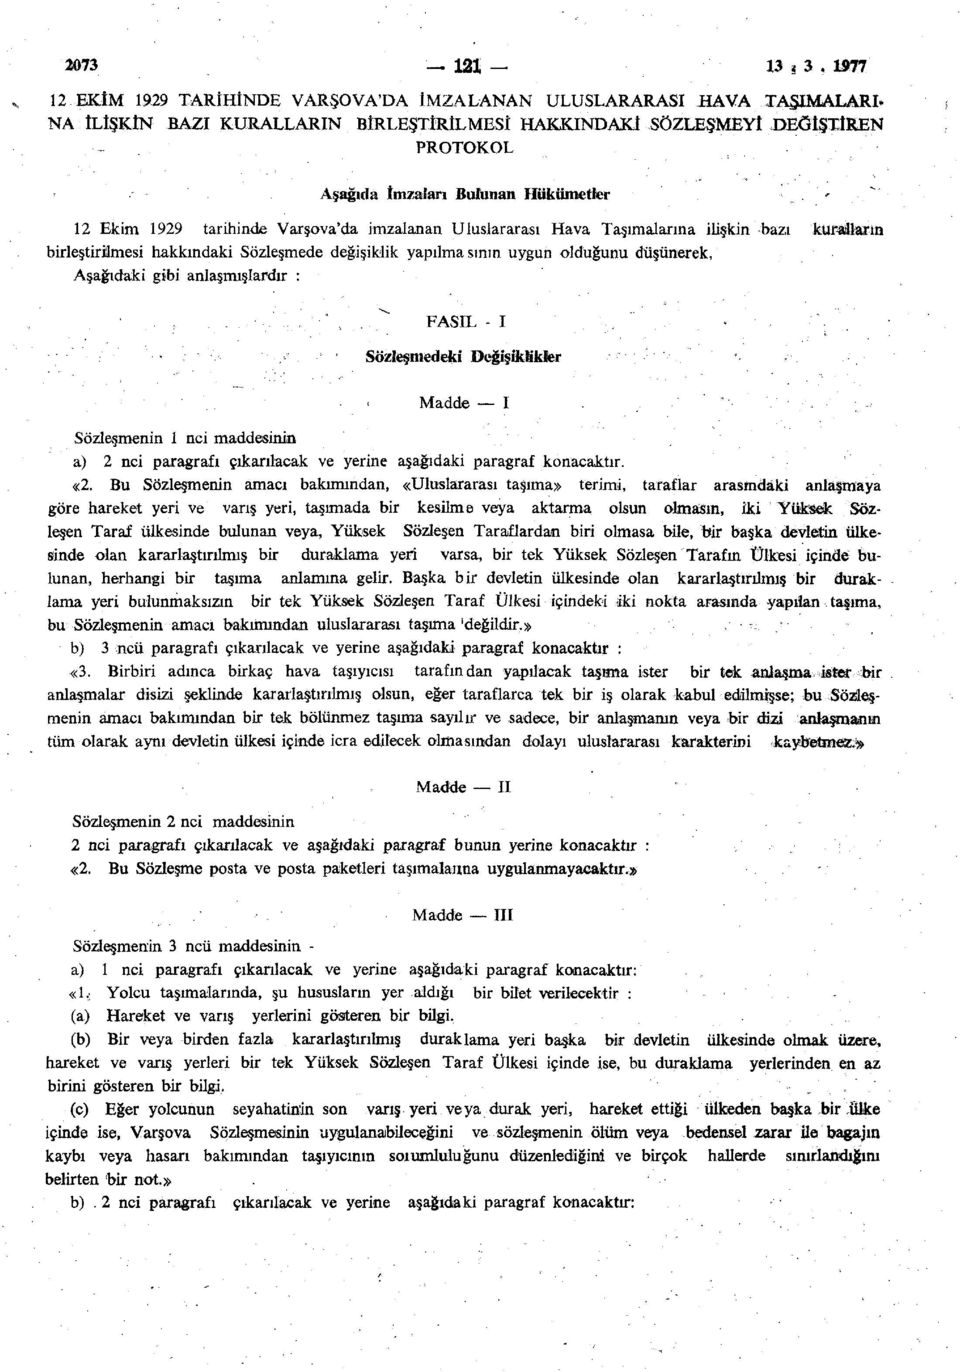 12 Ekim 1929 tarihinde Varşova'da imzalanan Uluslararası Hava Taşımalarına ilişkin bazı kuralların birleştirilmesi hakkındaki Sözleşmede değişiklik yapılmasının uygun olduğunu düşünerek, Aşağıdaki